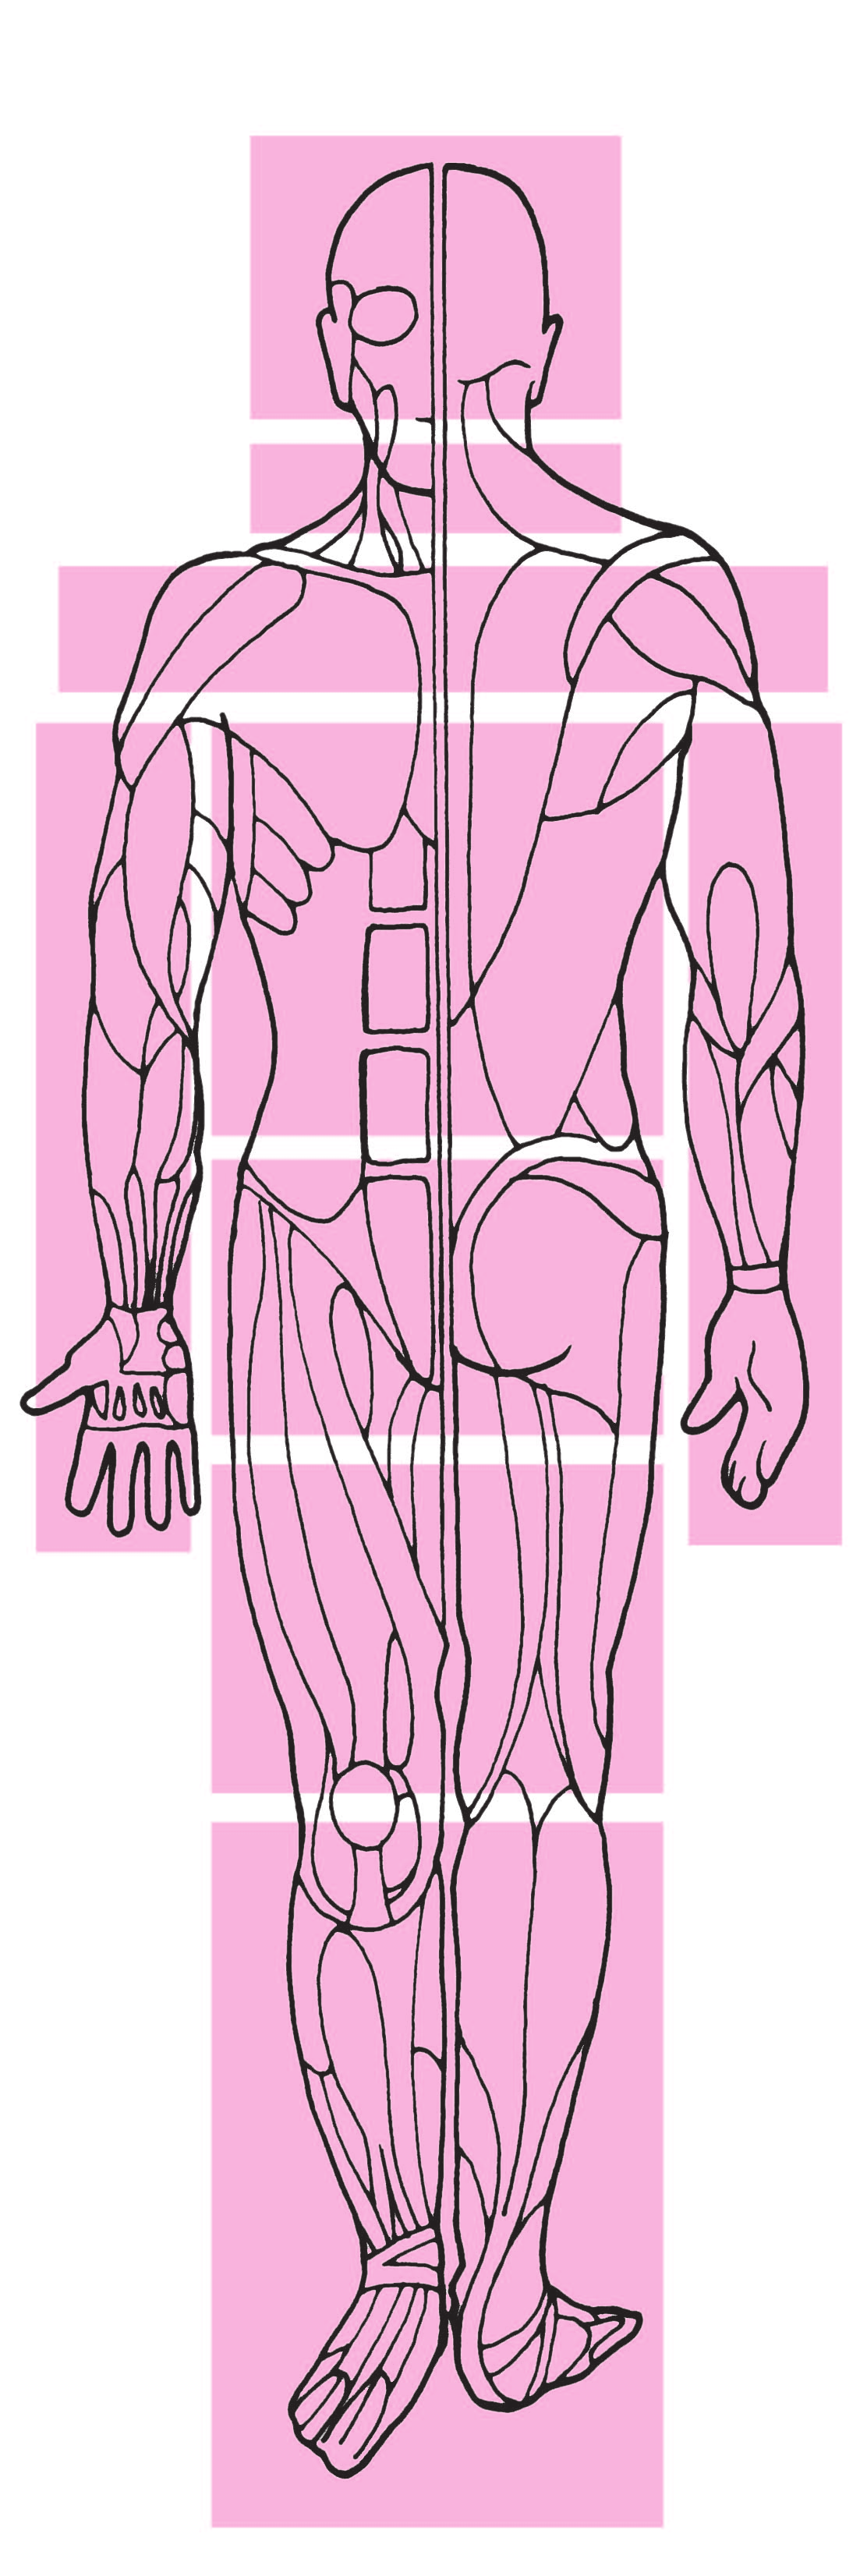 Indice delle aree muscolari 41 Muscoli del viso 42 Massetere 44 Temporale 46 Pterigoideo esterno 48 Pterigoideo interno 51 Muscoli del collo 52 Cervicali posteriori 57 Suboccipatali 60 Scaleni